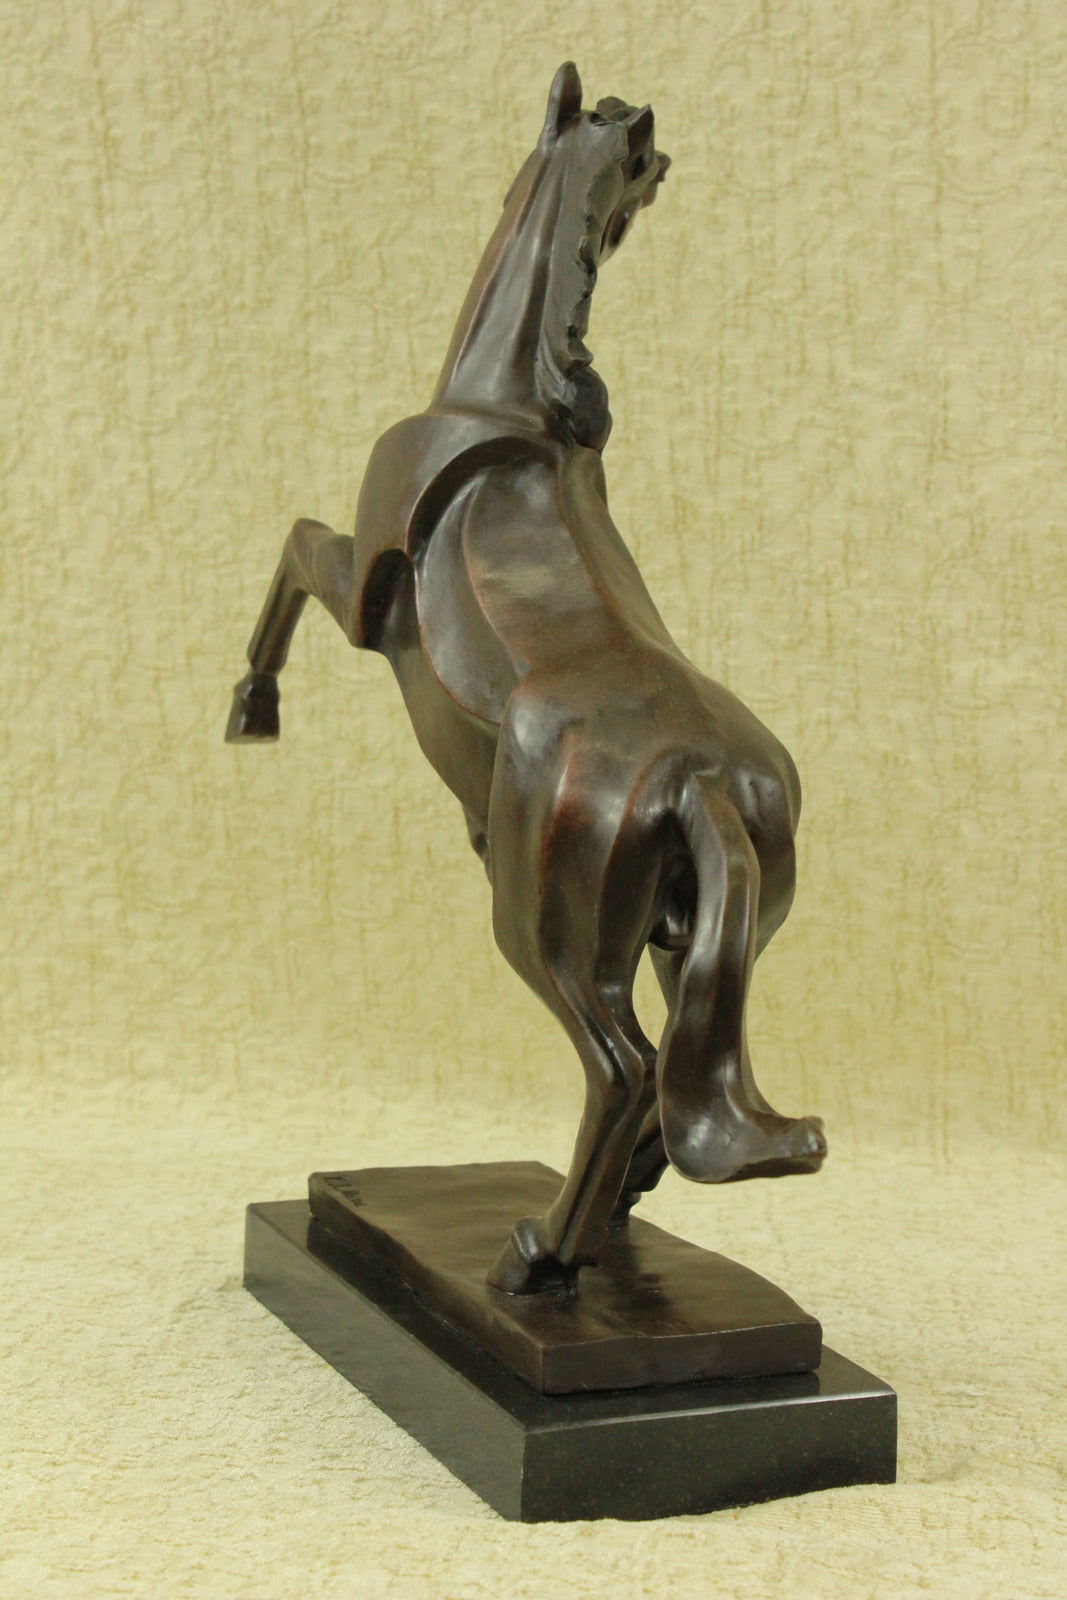 Abstract Modern Art Horse Gallops Bronze Sculpture Statue Figurine Figure